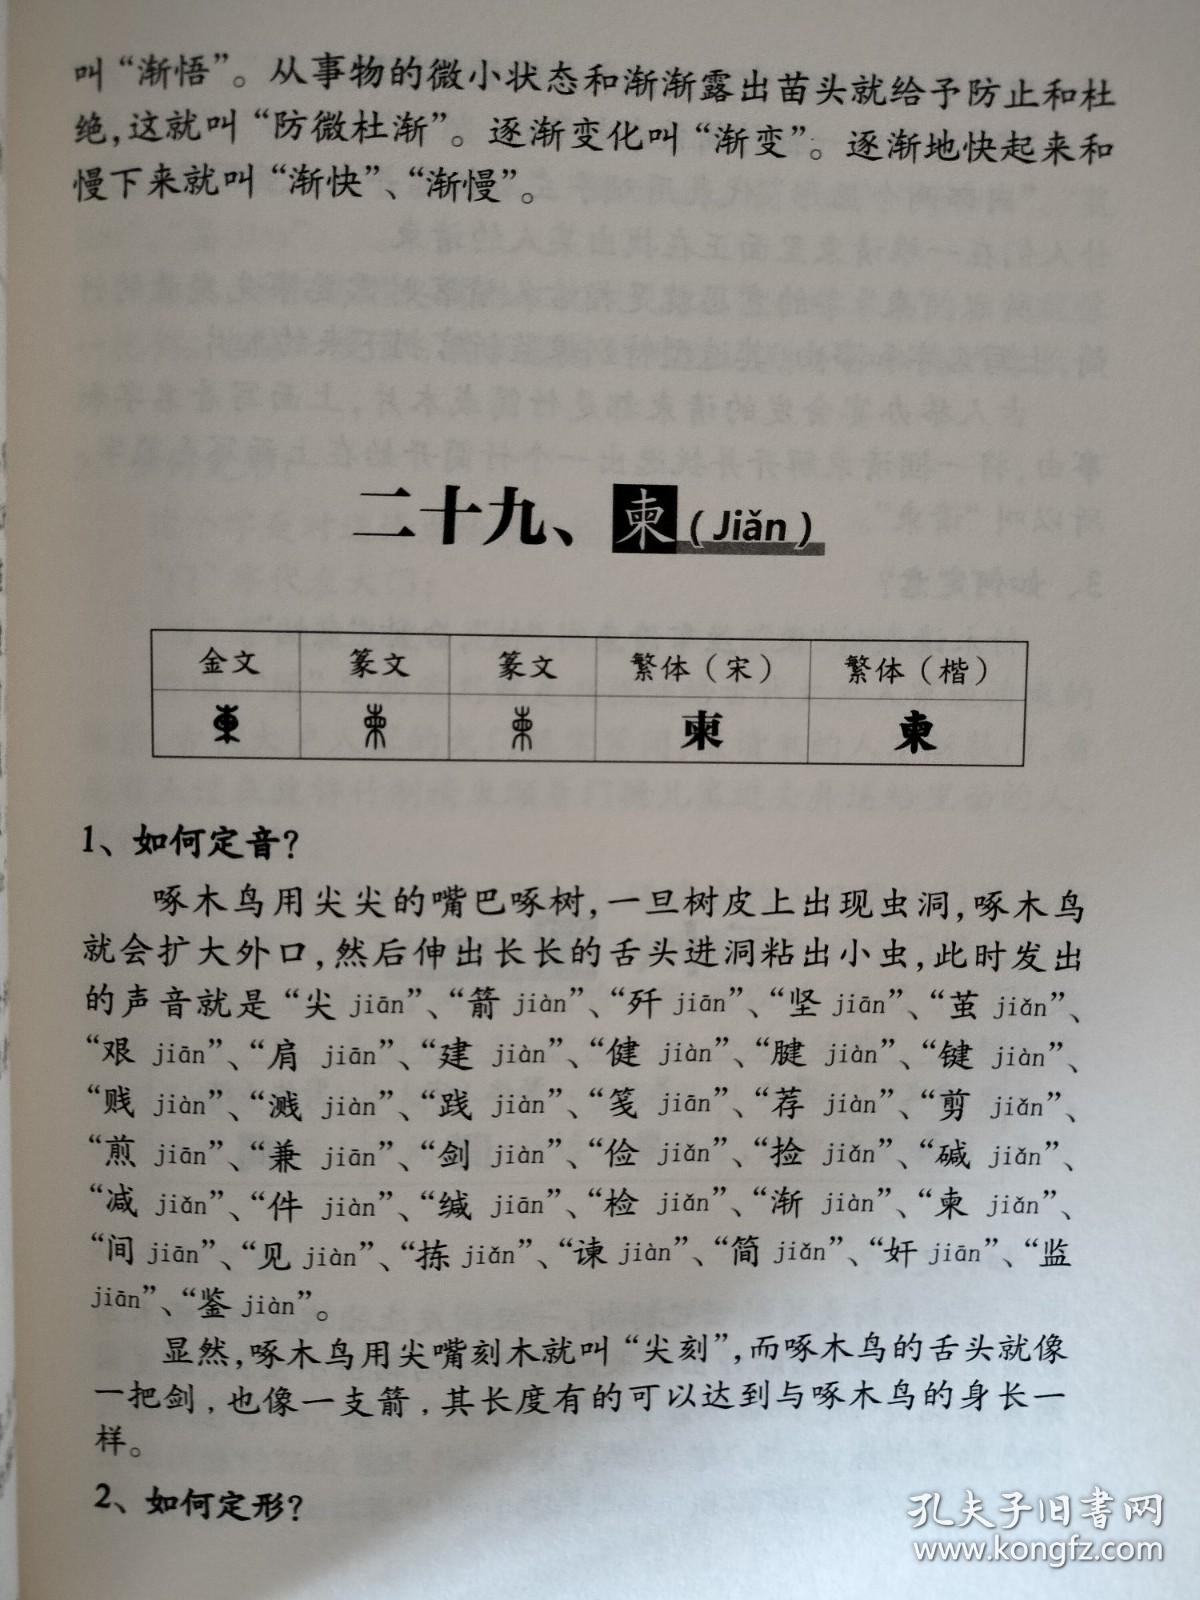 黄帝字典 第四卷 单本出售